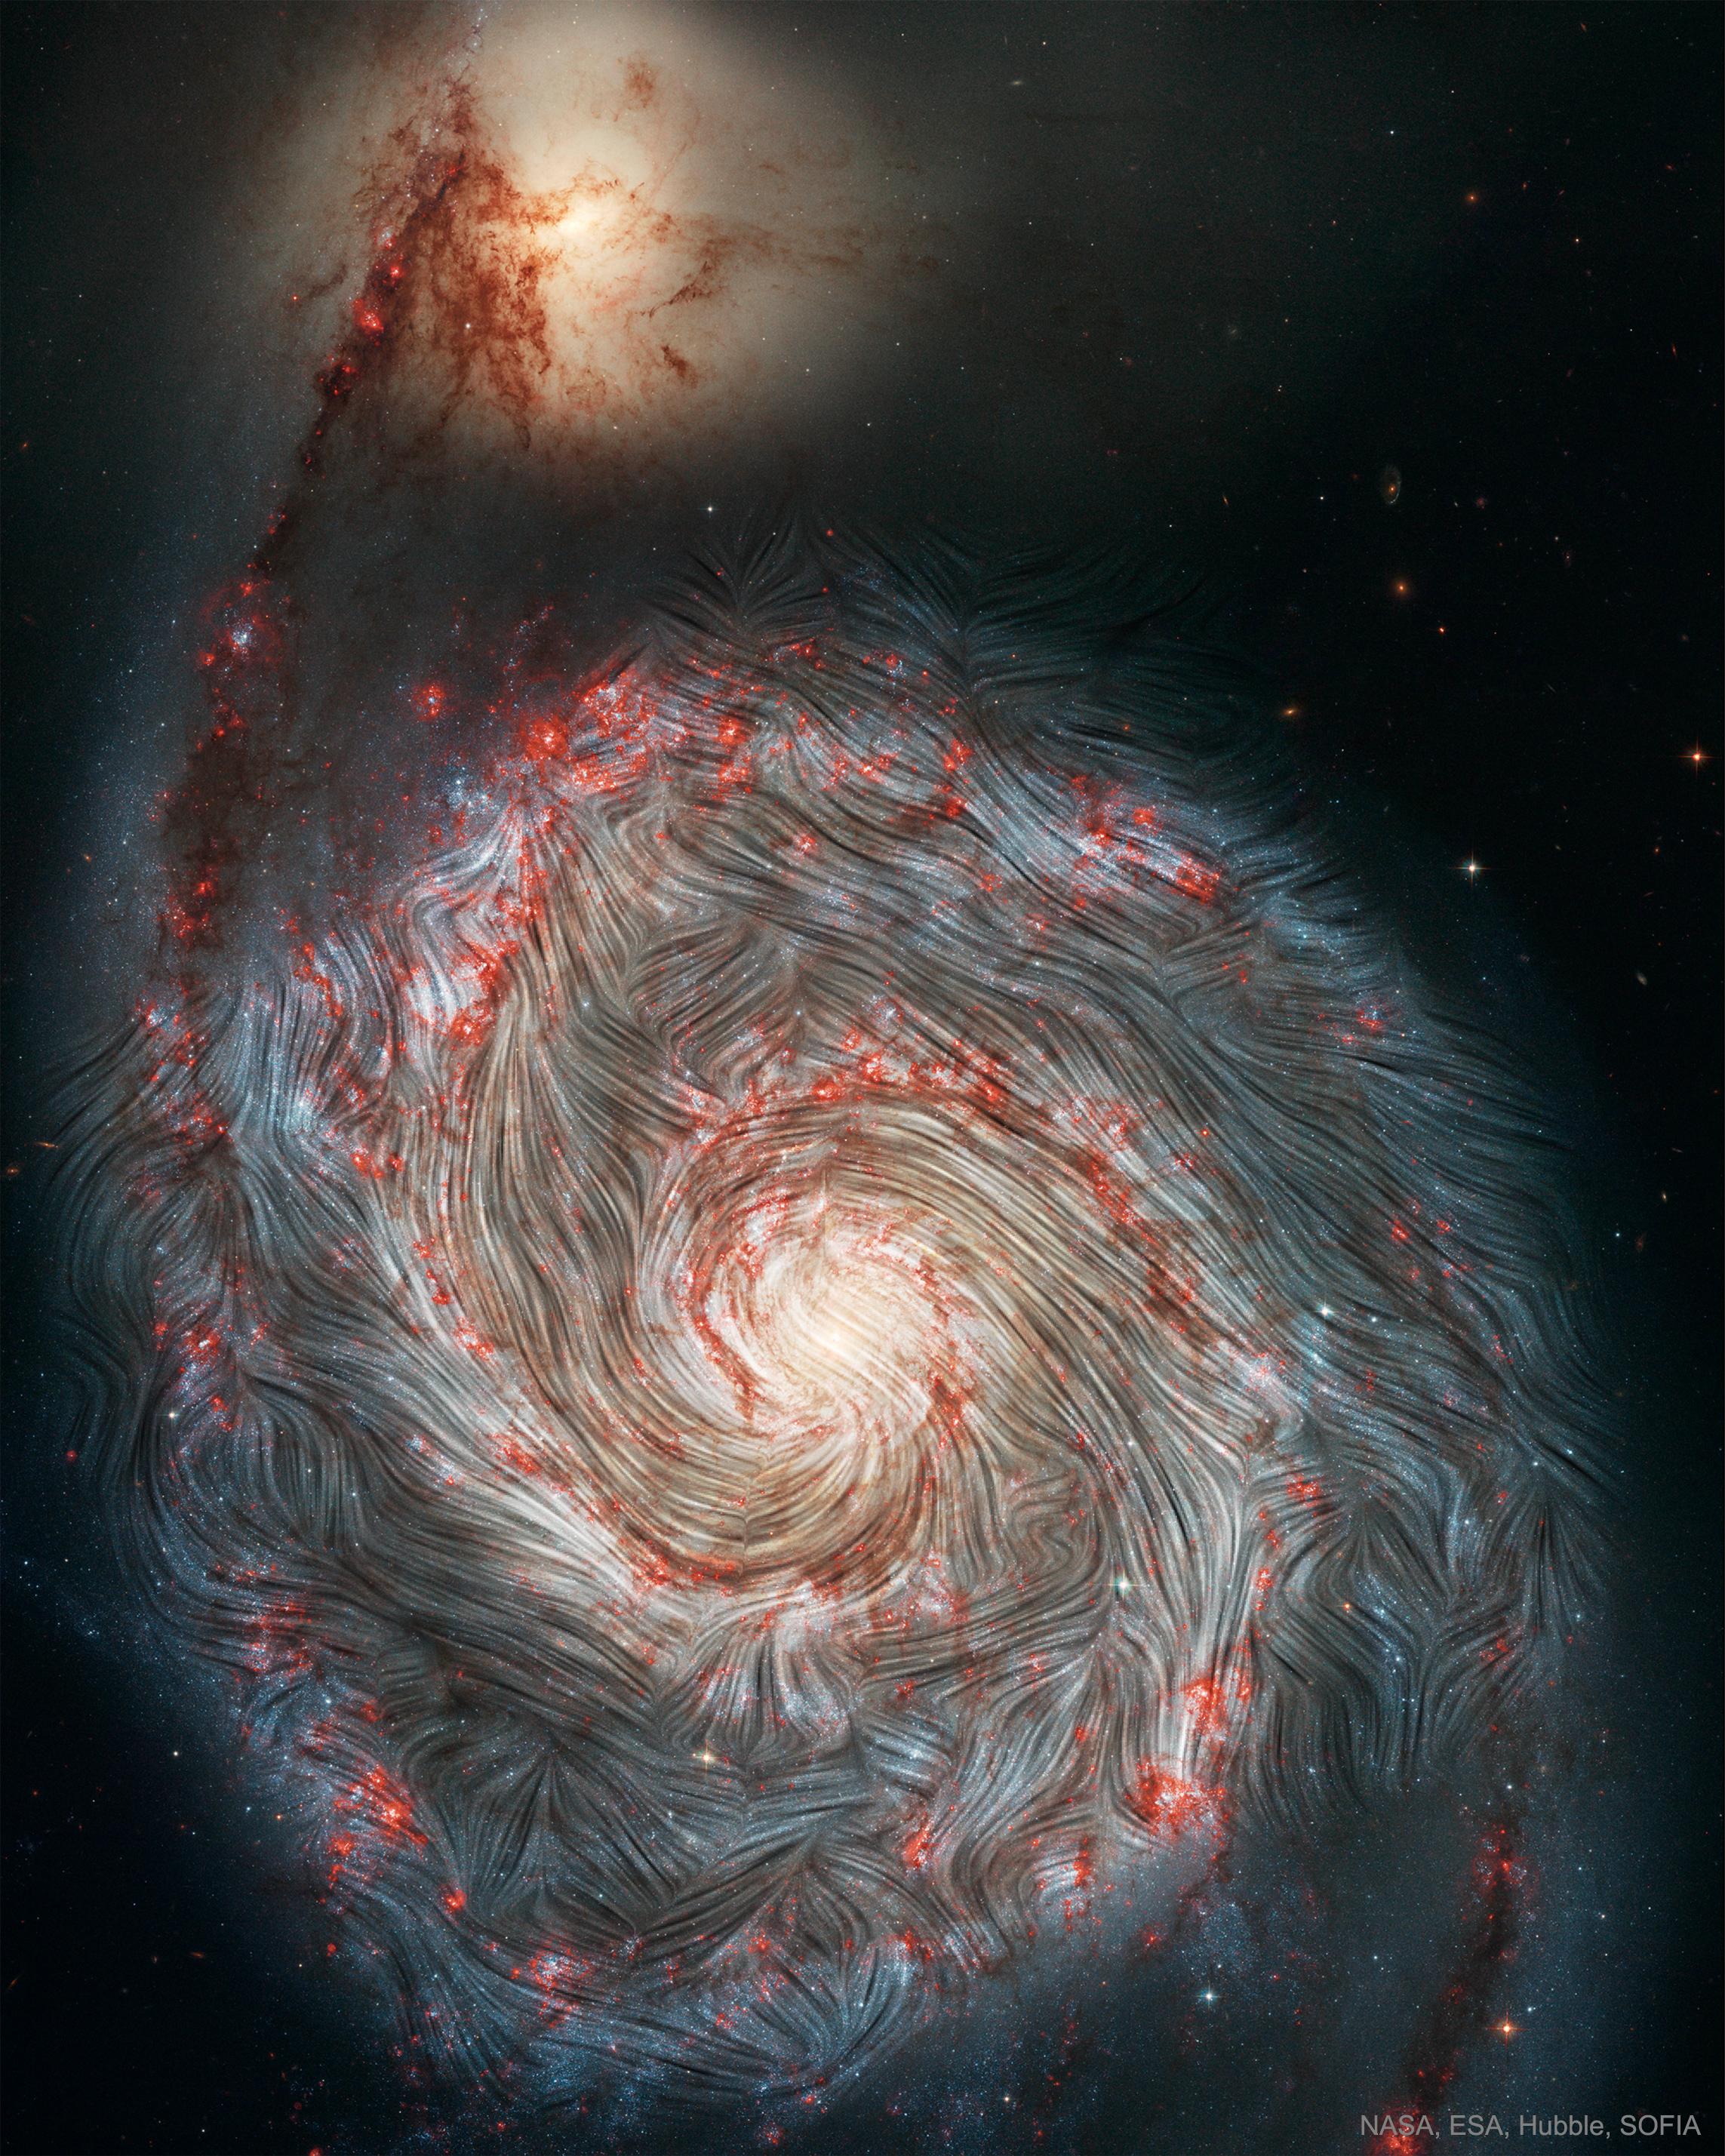 مجرّة الدوّامة وتظهر عليها اتجاهات الحقل المغناطيسي كخطوط انسيابيّة متماوجة تحيكُ نقشاً حلزونيّاً. تظهر في أعلى الصورة المجرّة المرافقة والتي تمارس سحباً ثقاليّاً